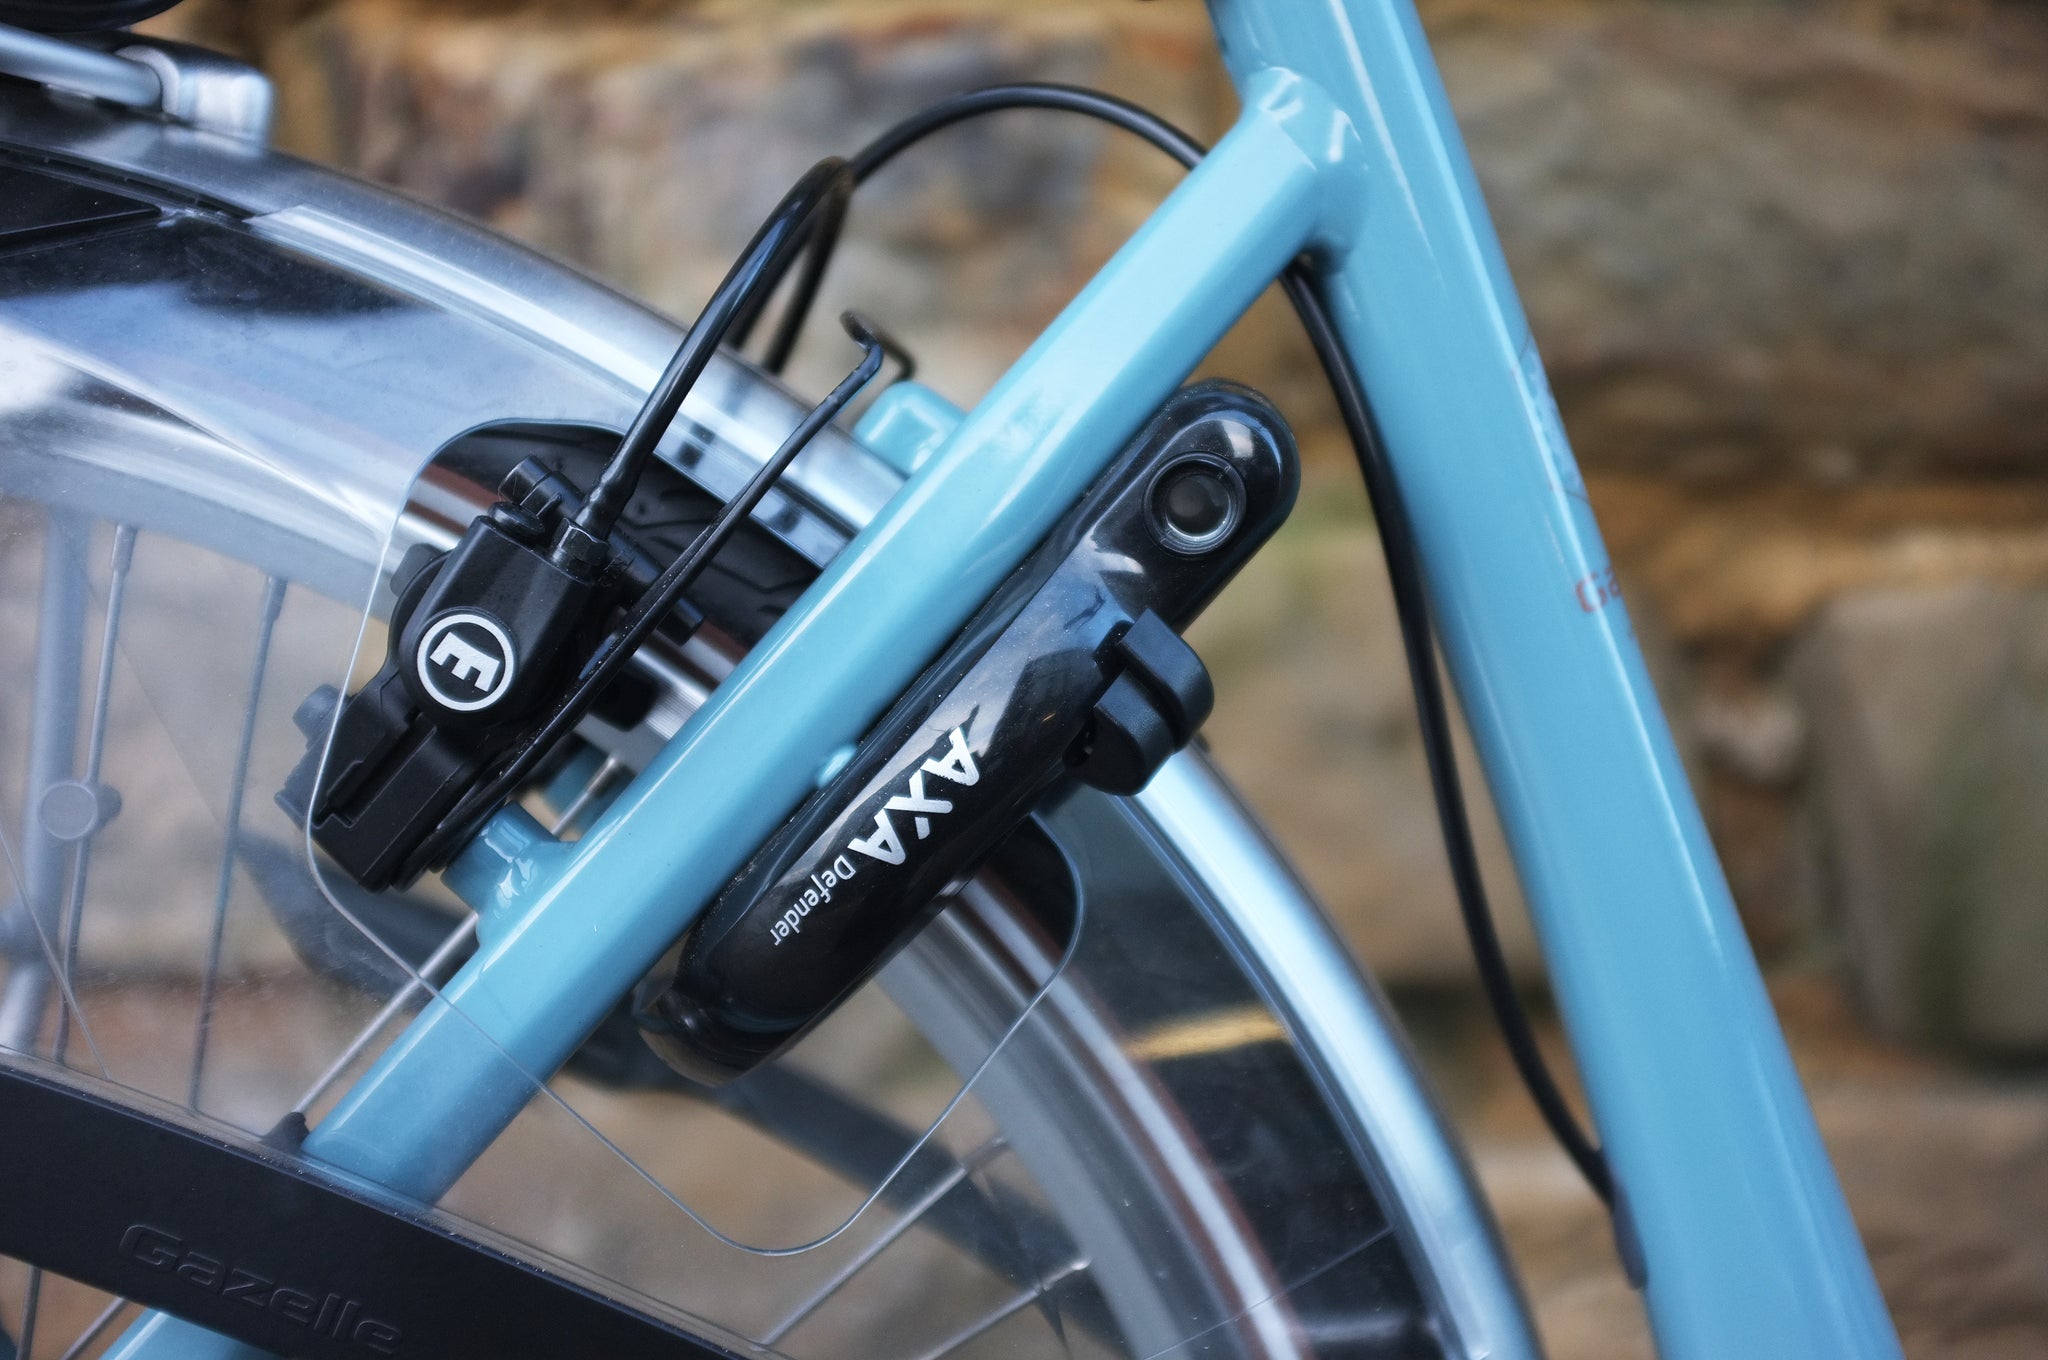 gazelle orange c7+ HMB electric bike review